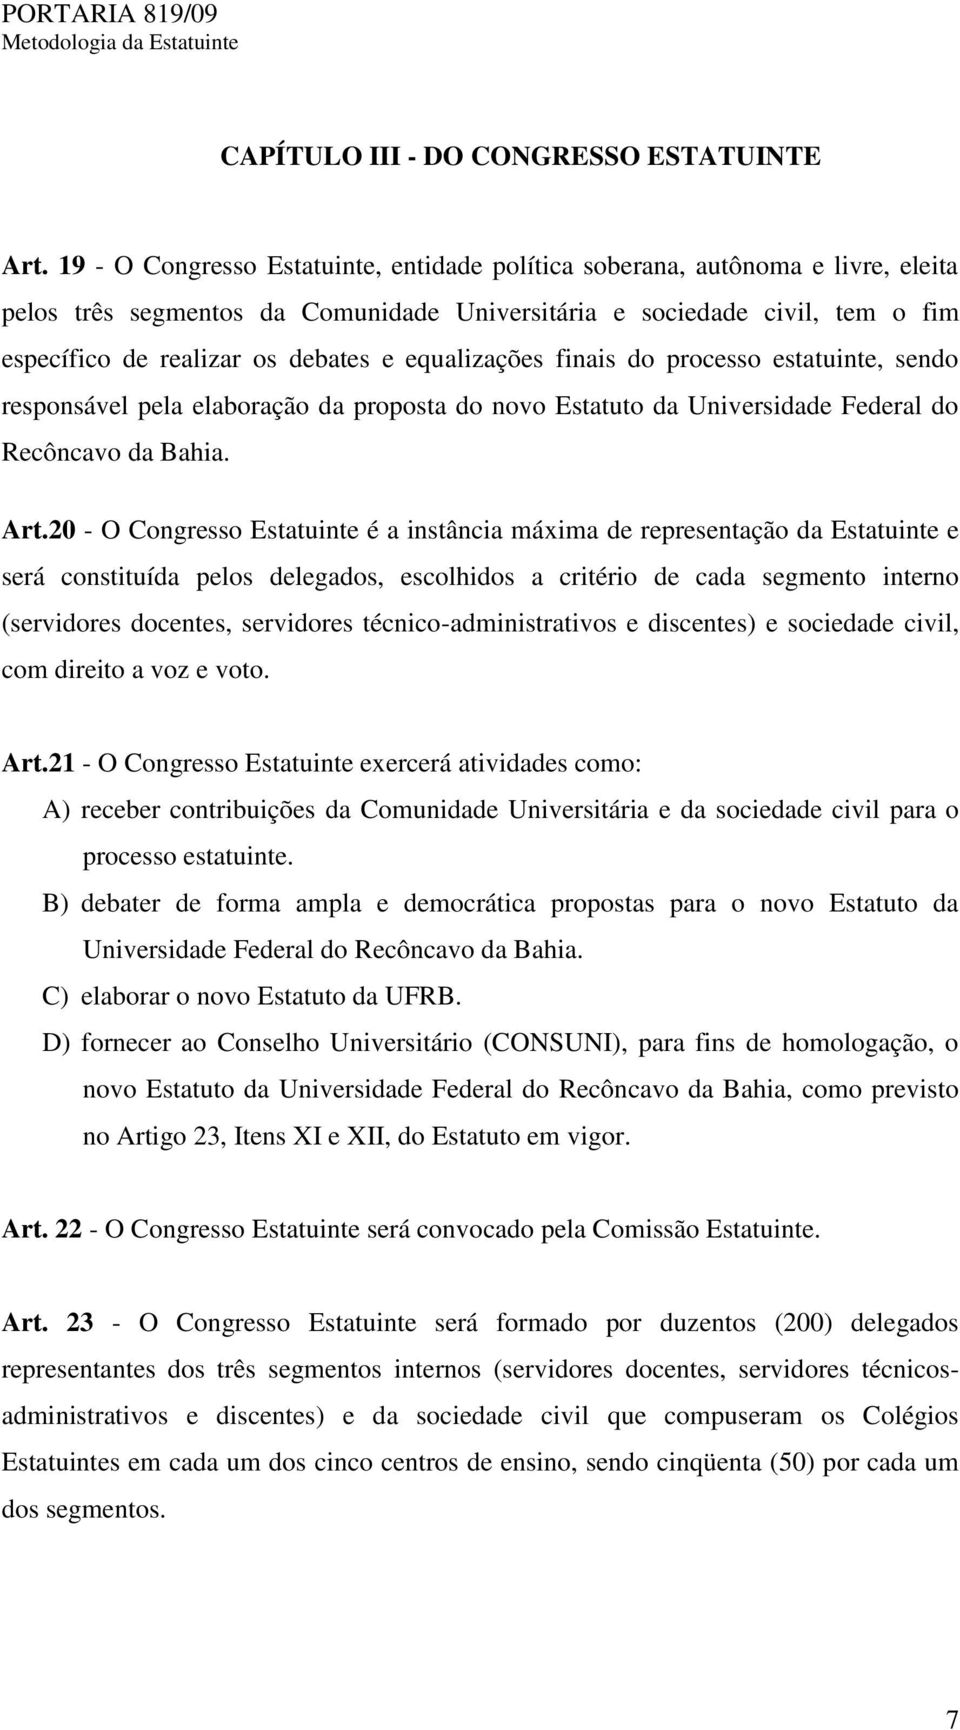 equalizações finais do processo estatuinte, sendo responsável pela elaboração da proposta do novo Estatuto da Universidade Federal do Recôncavo da Bahia. Art.